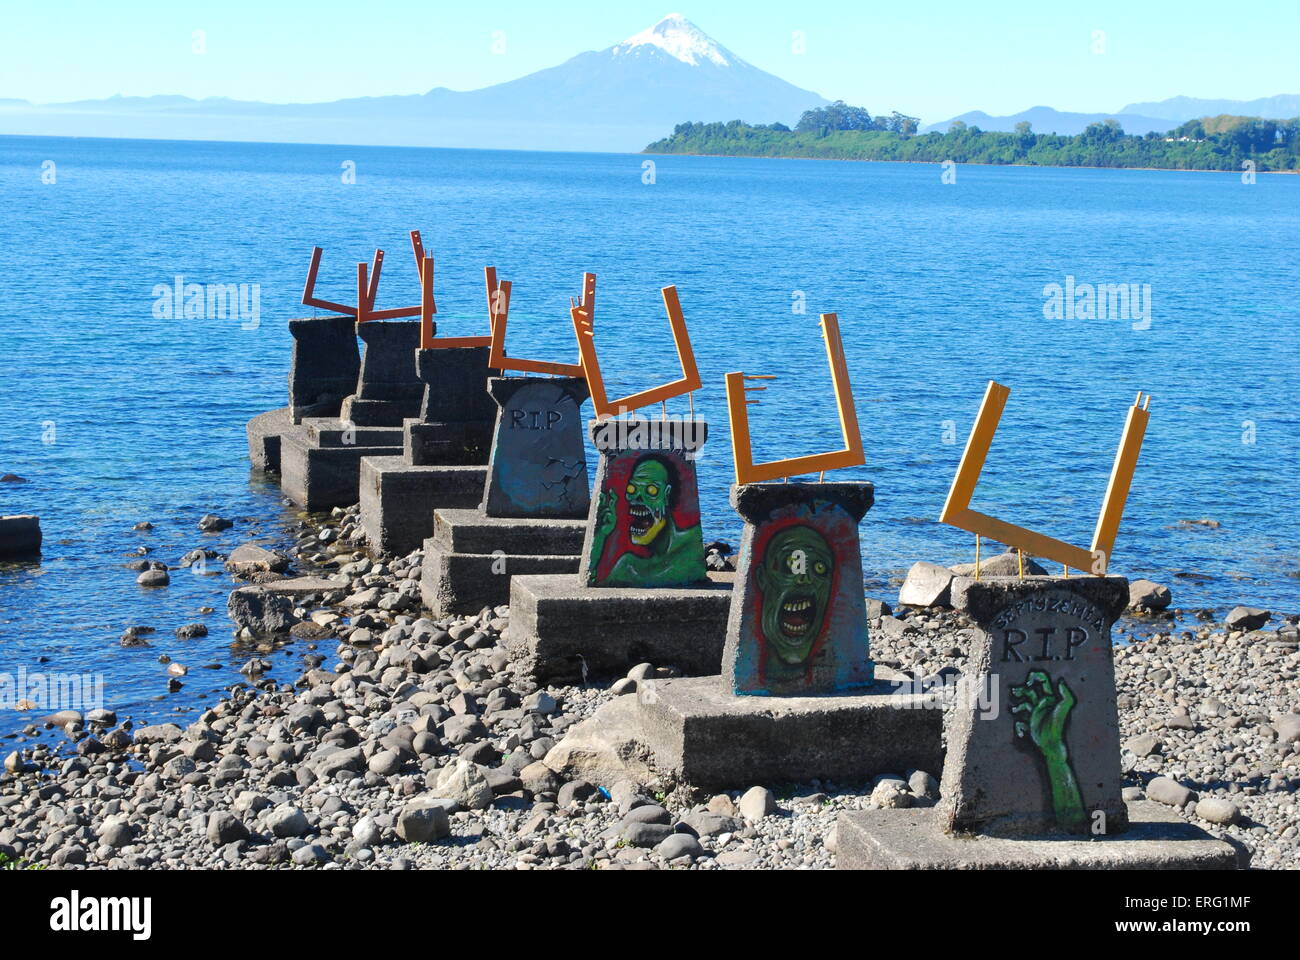 Embarcadero en desuso con graffiti, Puerto Varas, Chile Foto de stock